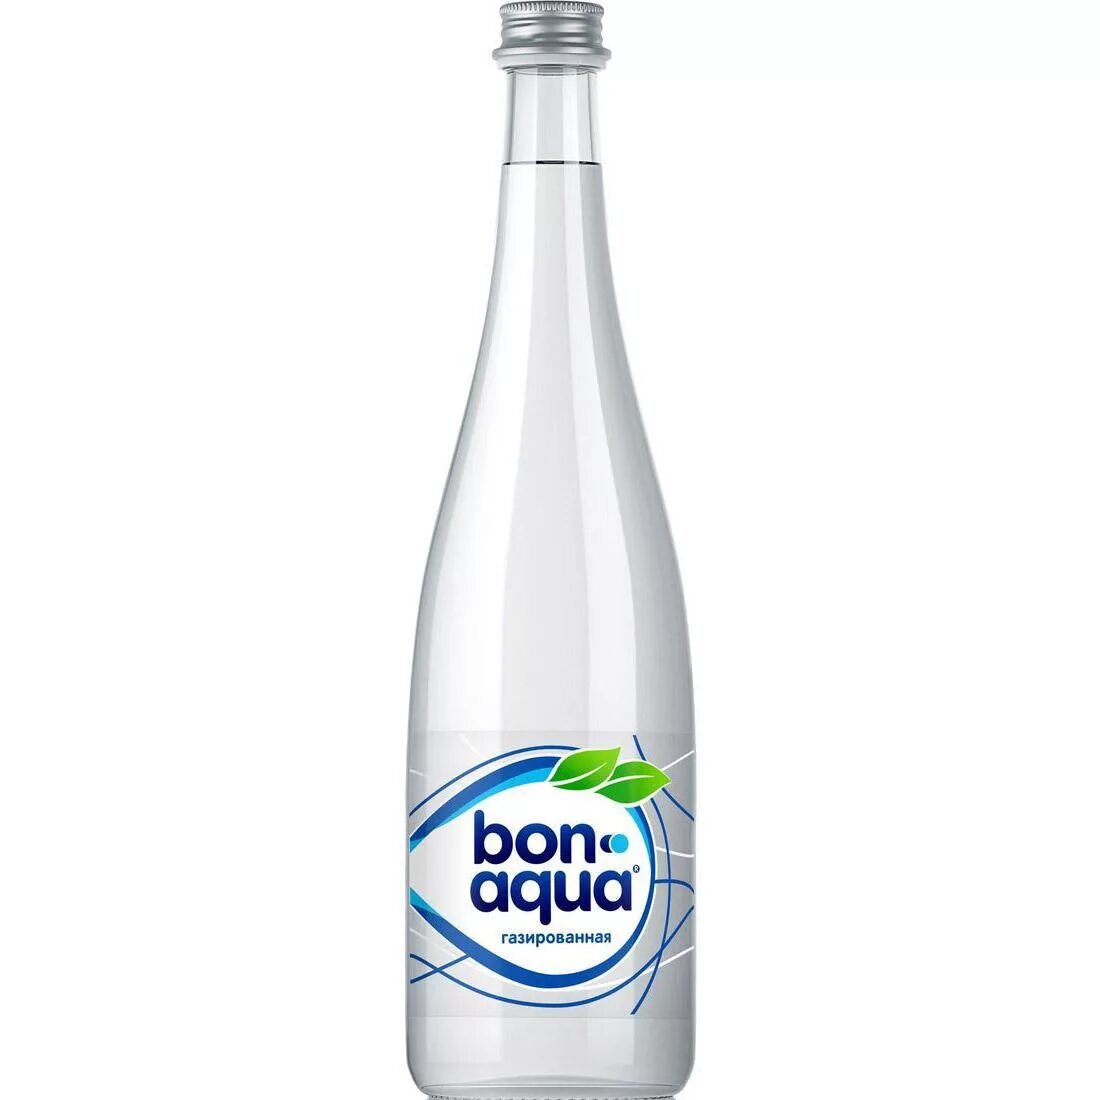 Вода без газа стекло. Бон Аква ГАЗ без газа 0,33 стекло. Бонаква стекло 0.33. Вода Bonaqua 0,33 негазированная. Bonaqua негазированная в стекле.